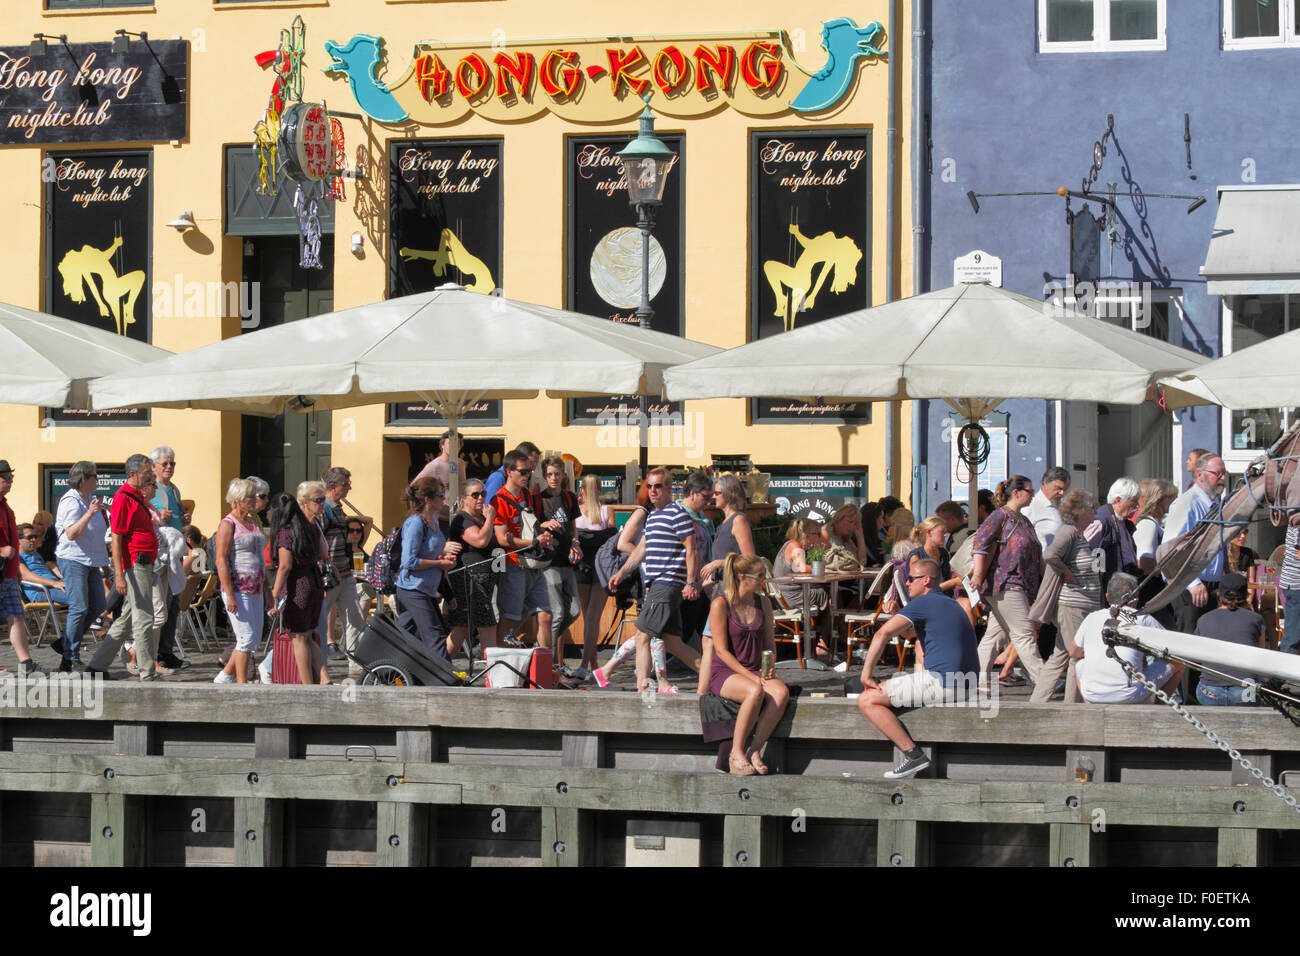 In gemütlichem Ambiente im bezaubernden Nyhavn treffen sich die Menschen und unterhalten sich über einen Drink in der Sonne. Viele sitzen lieber auf der Wharf unter den alten Schiffen. Dänische Hyge. Stockfoto